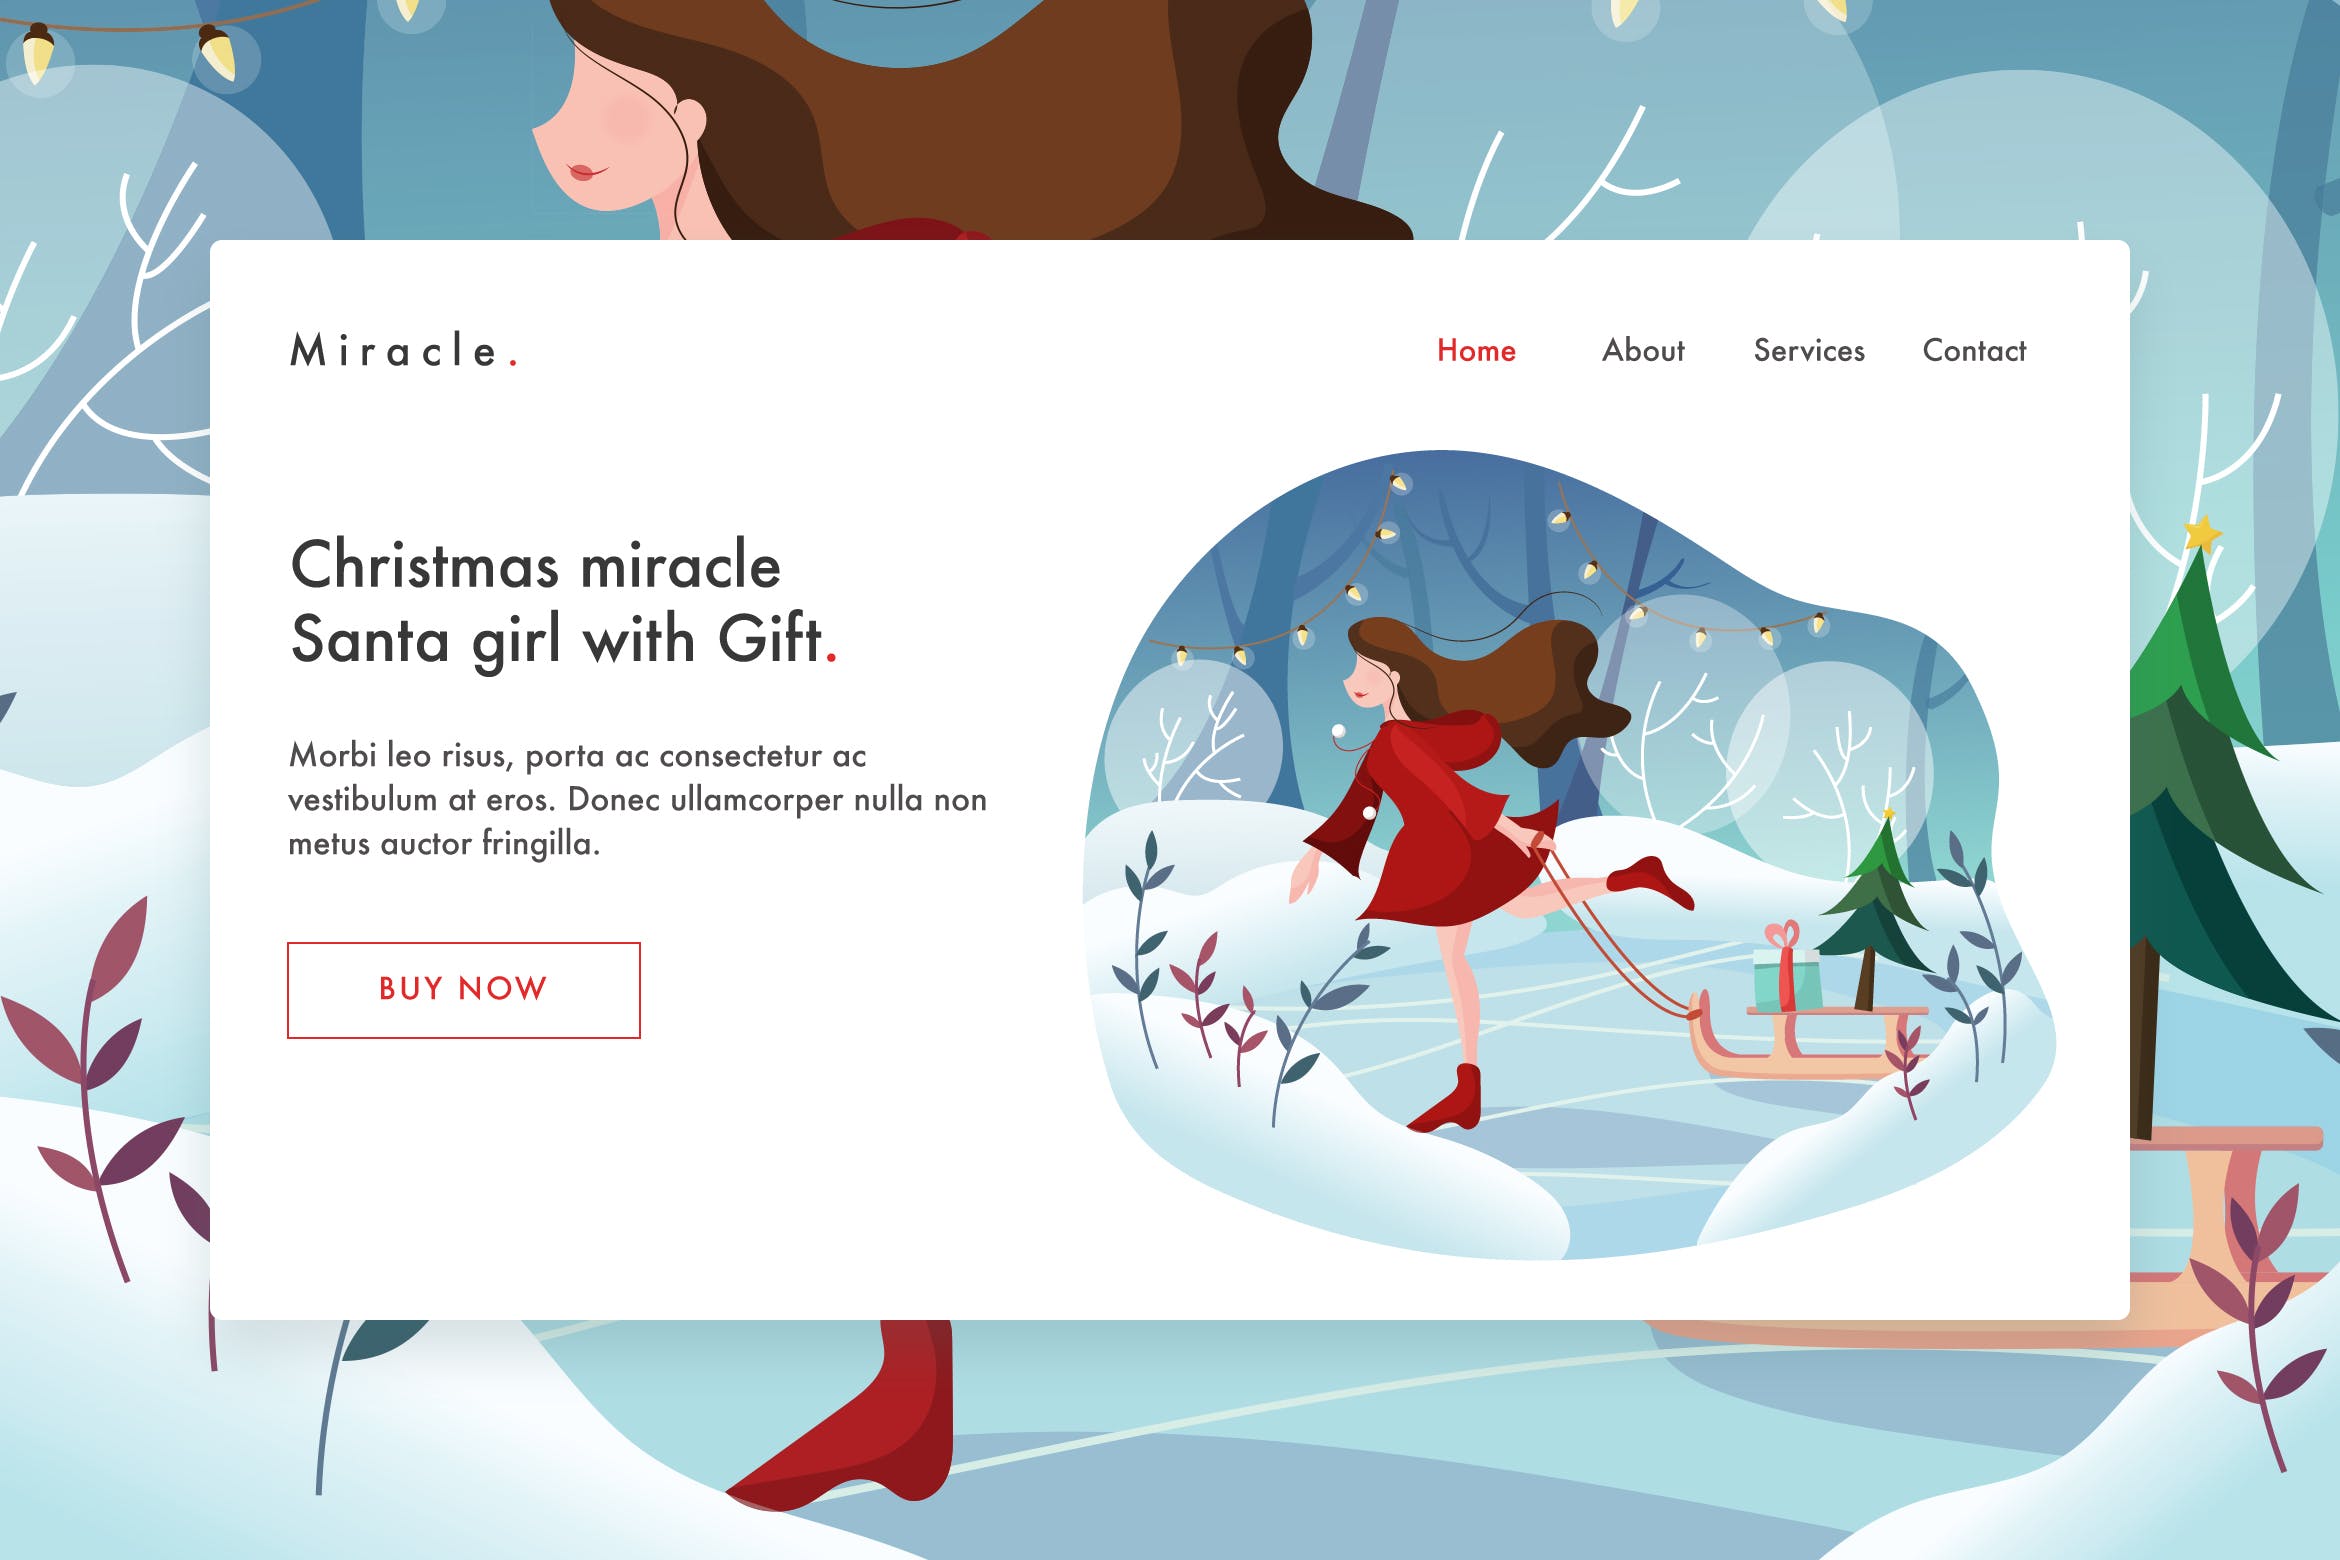 圣诞节礼物主题网站设计矢量插画素材v2 Santa girl with gift Vector Illustration Landing插图